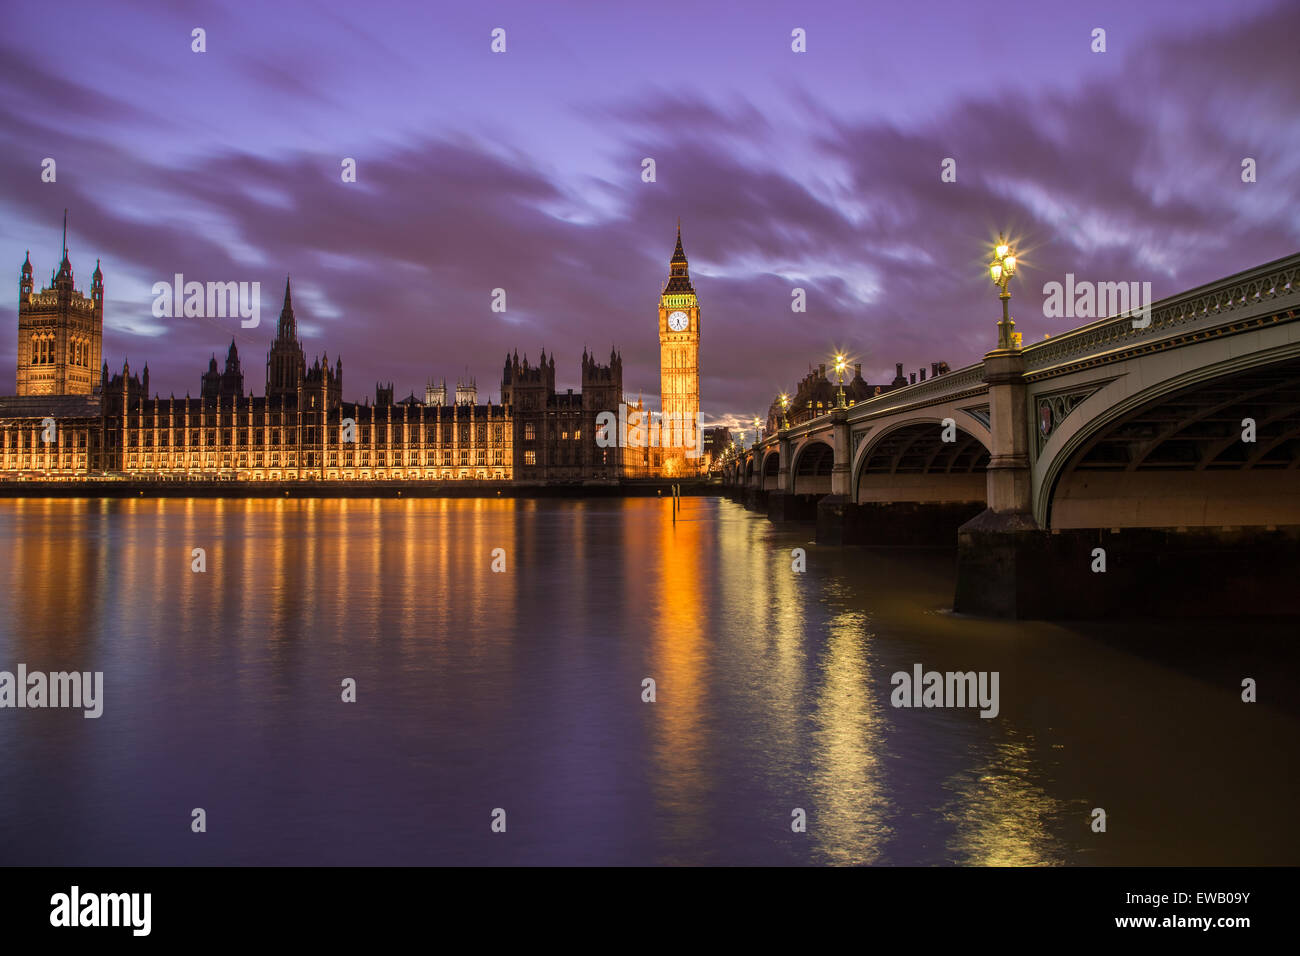 Chambres du Parlement de l'autre côté de la Tamise au crépuscule. Partie de Westminster Bridge peut être vu. Banque D'Images